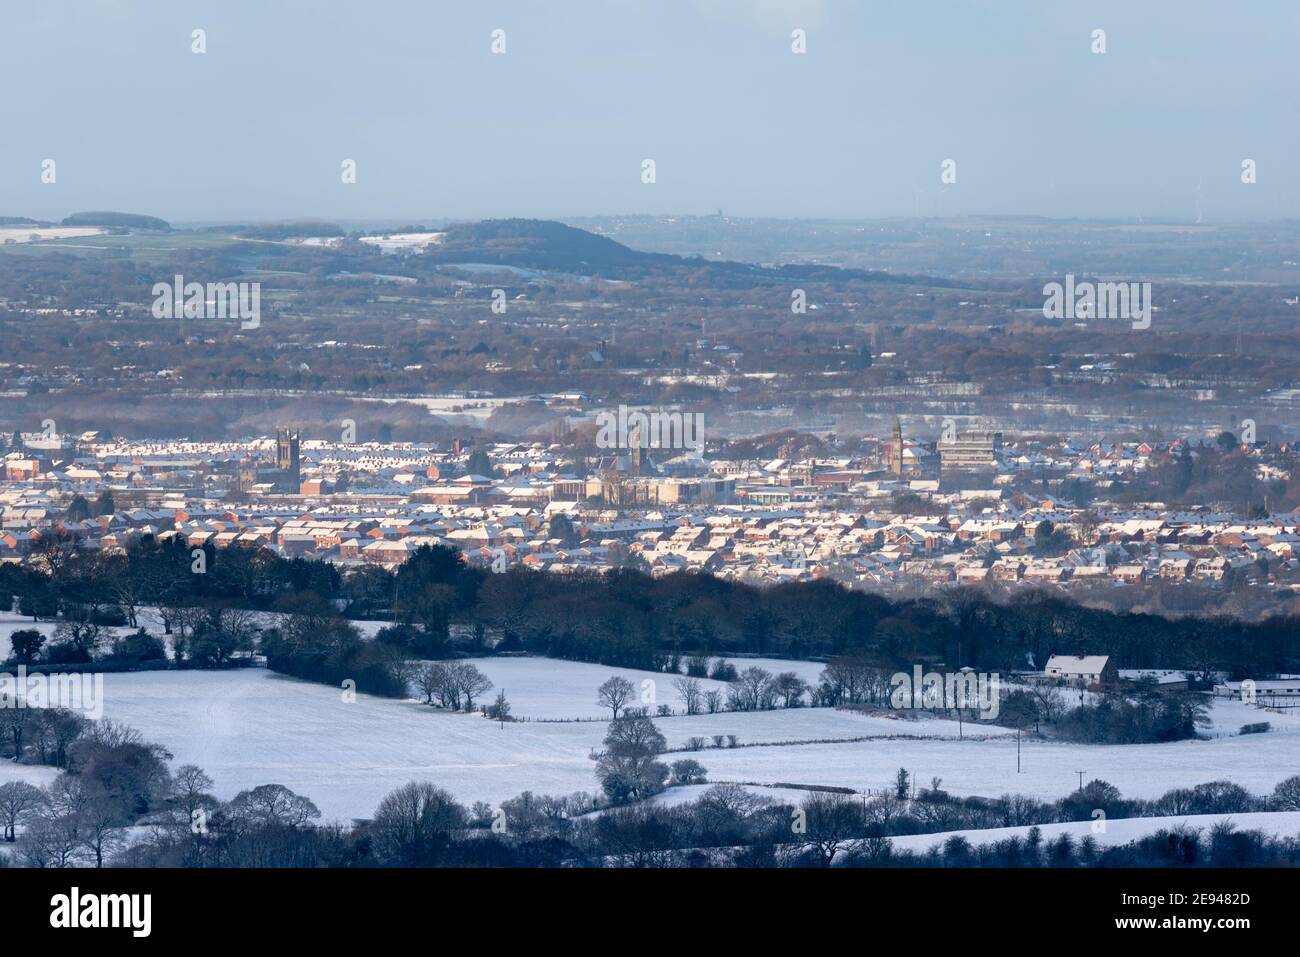 El bullicioso pueblo de Chorley, visto desde lo alto de la zona de los páramos de los alrededores. Foto de stock